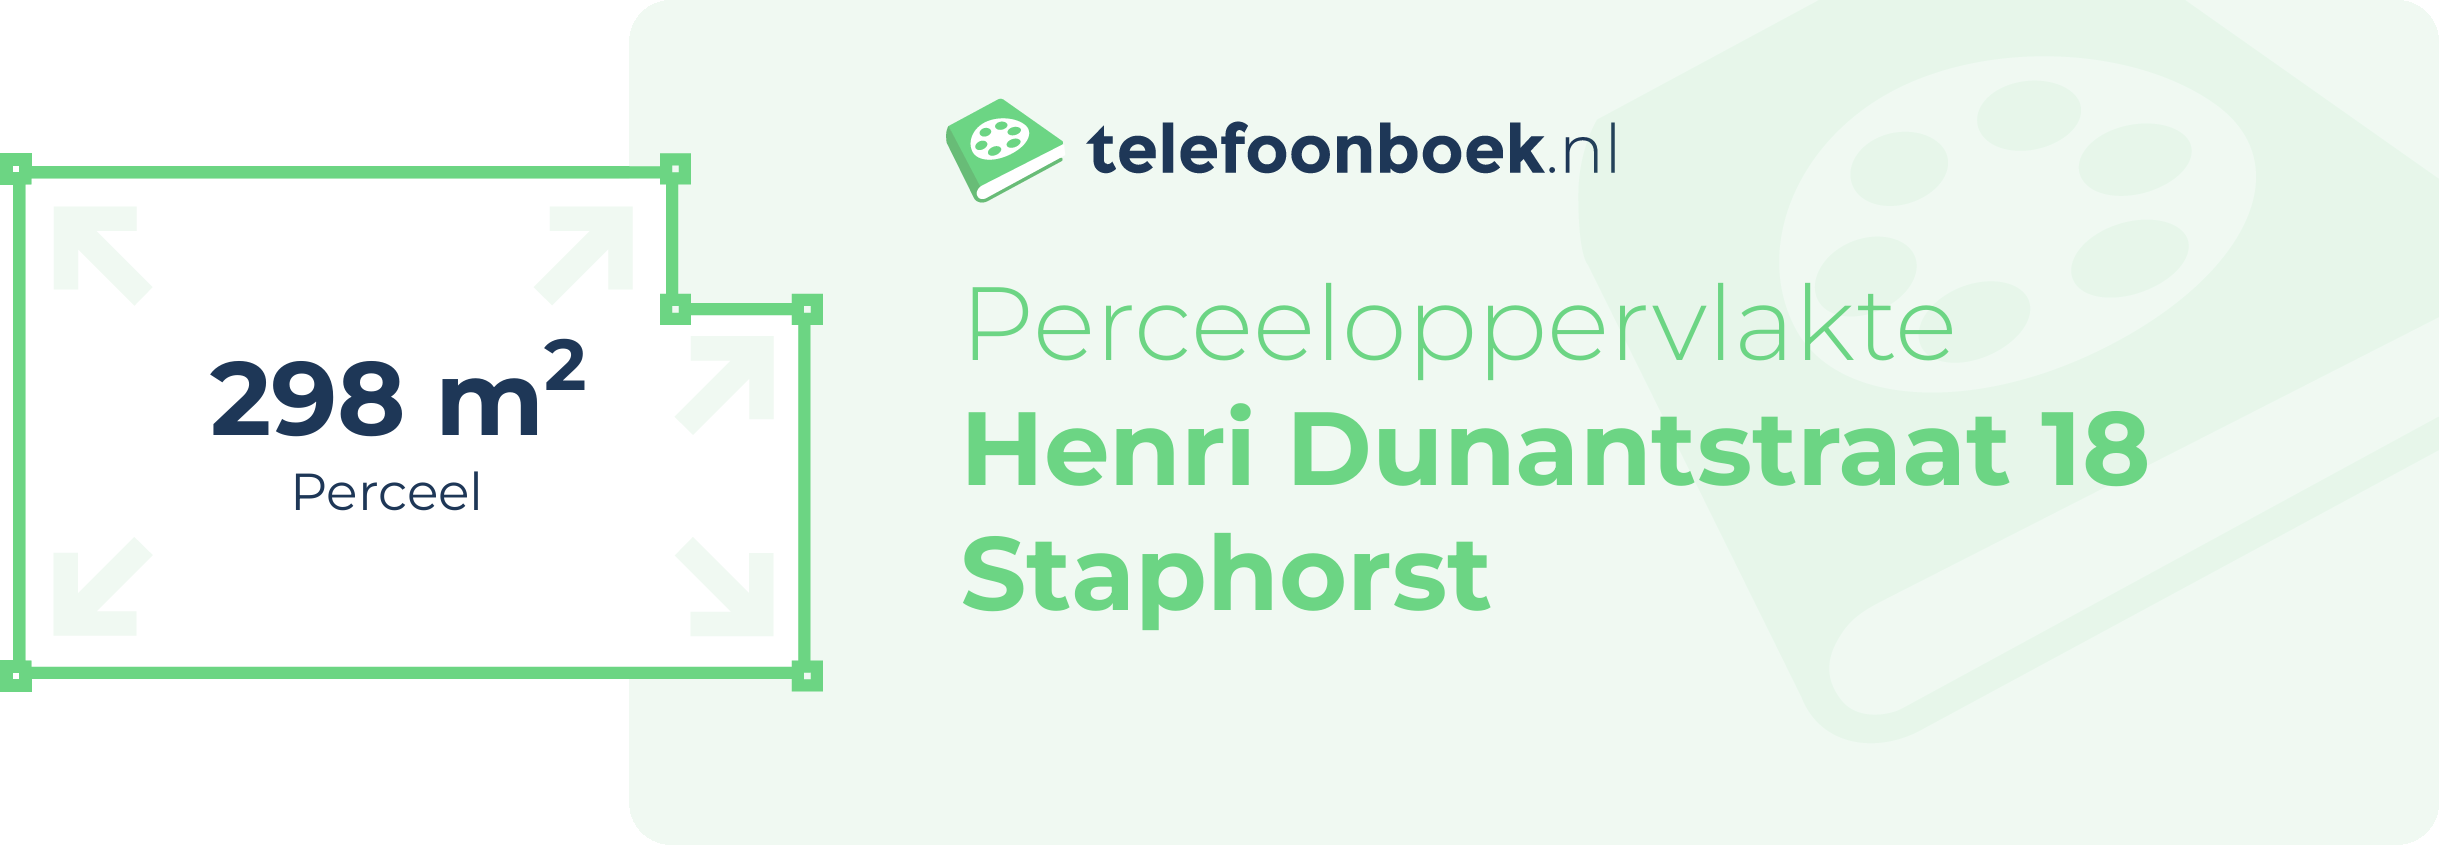 Perceeloppervlakte Henri Dunantstraat 18 Staphorst